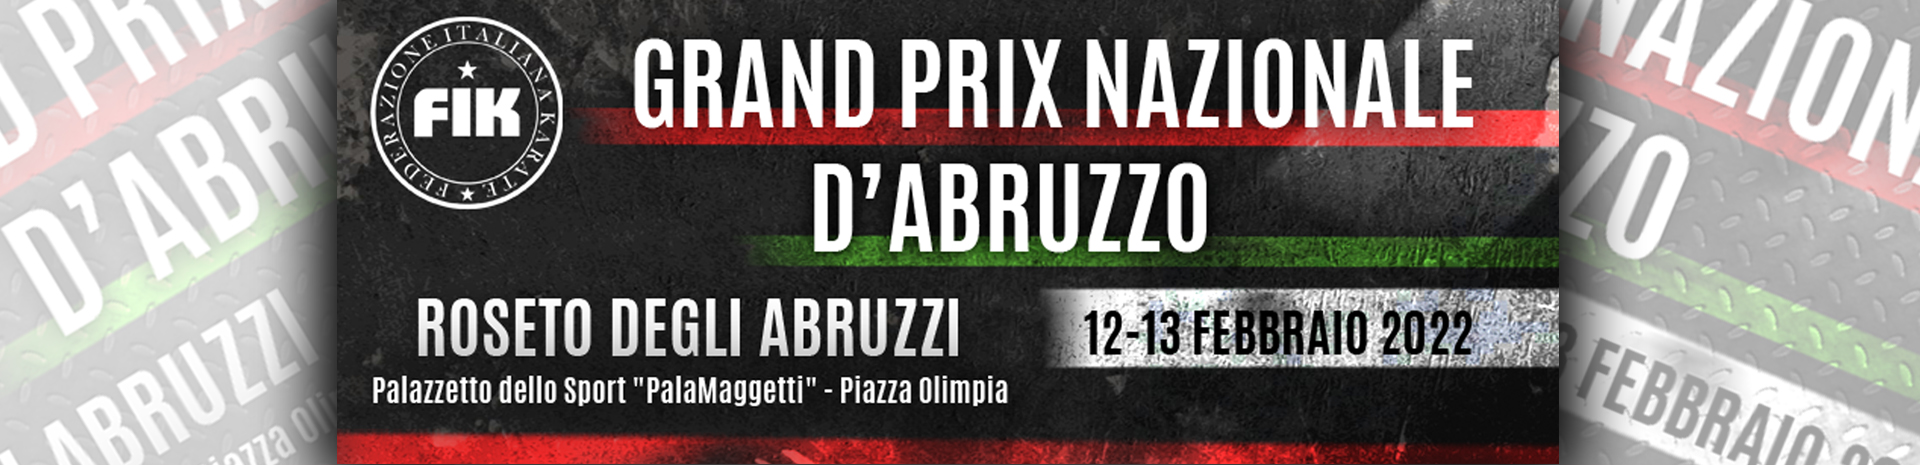 Grand Prix Nazionale d'Abruzzo 2022